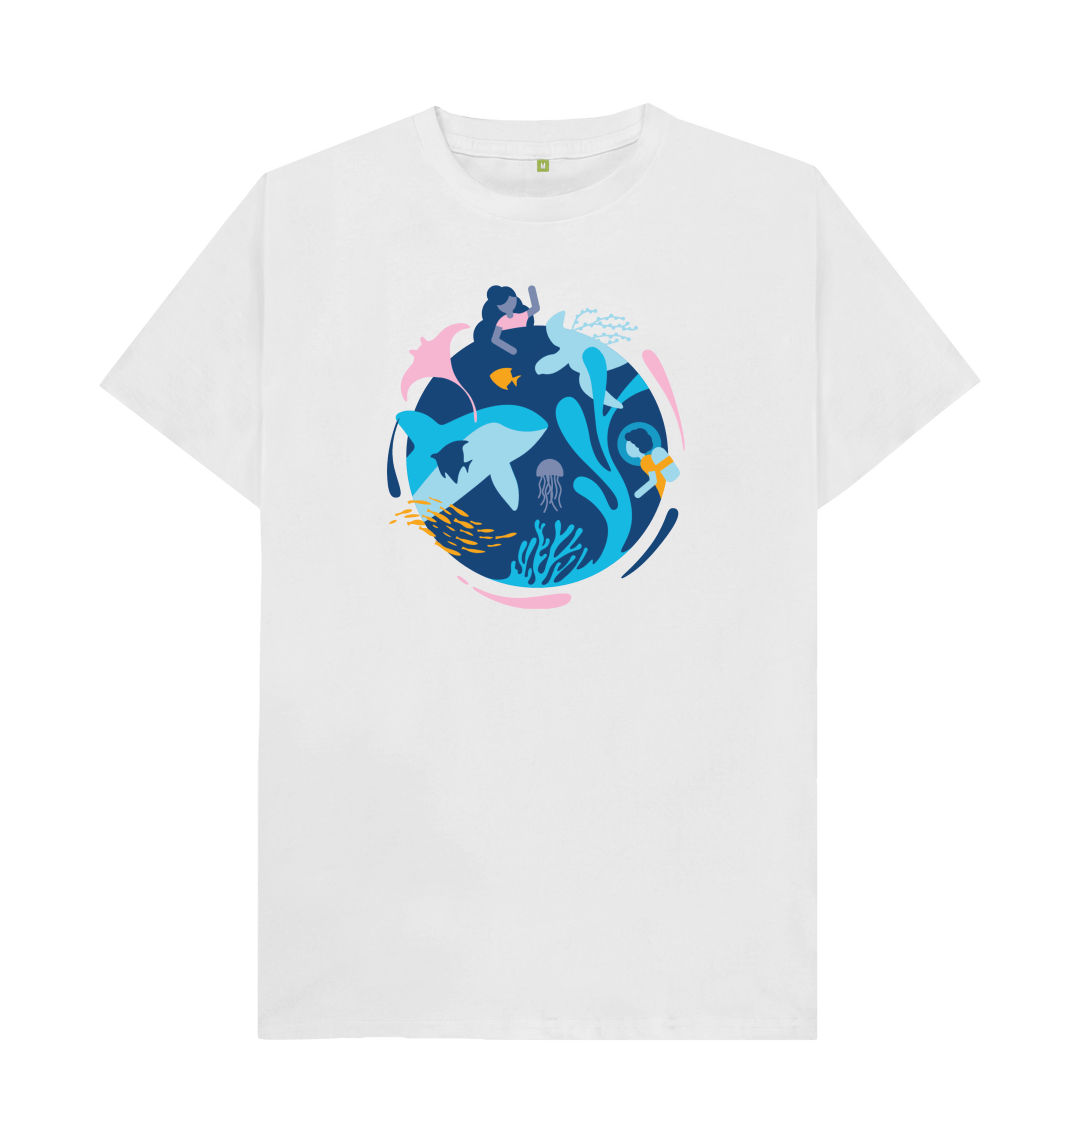 World Ocean Day T-Shirt